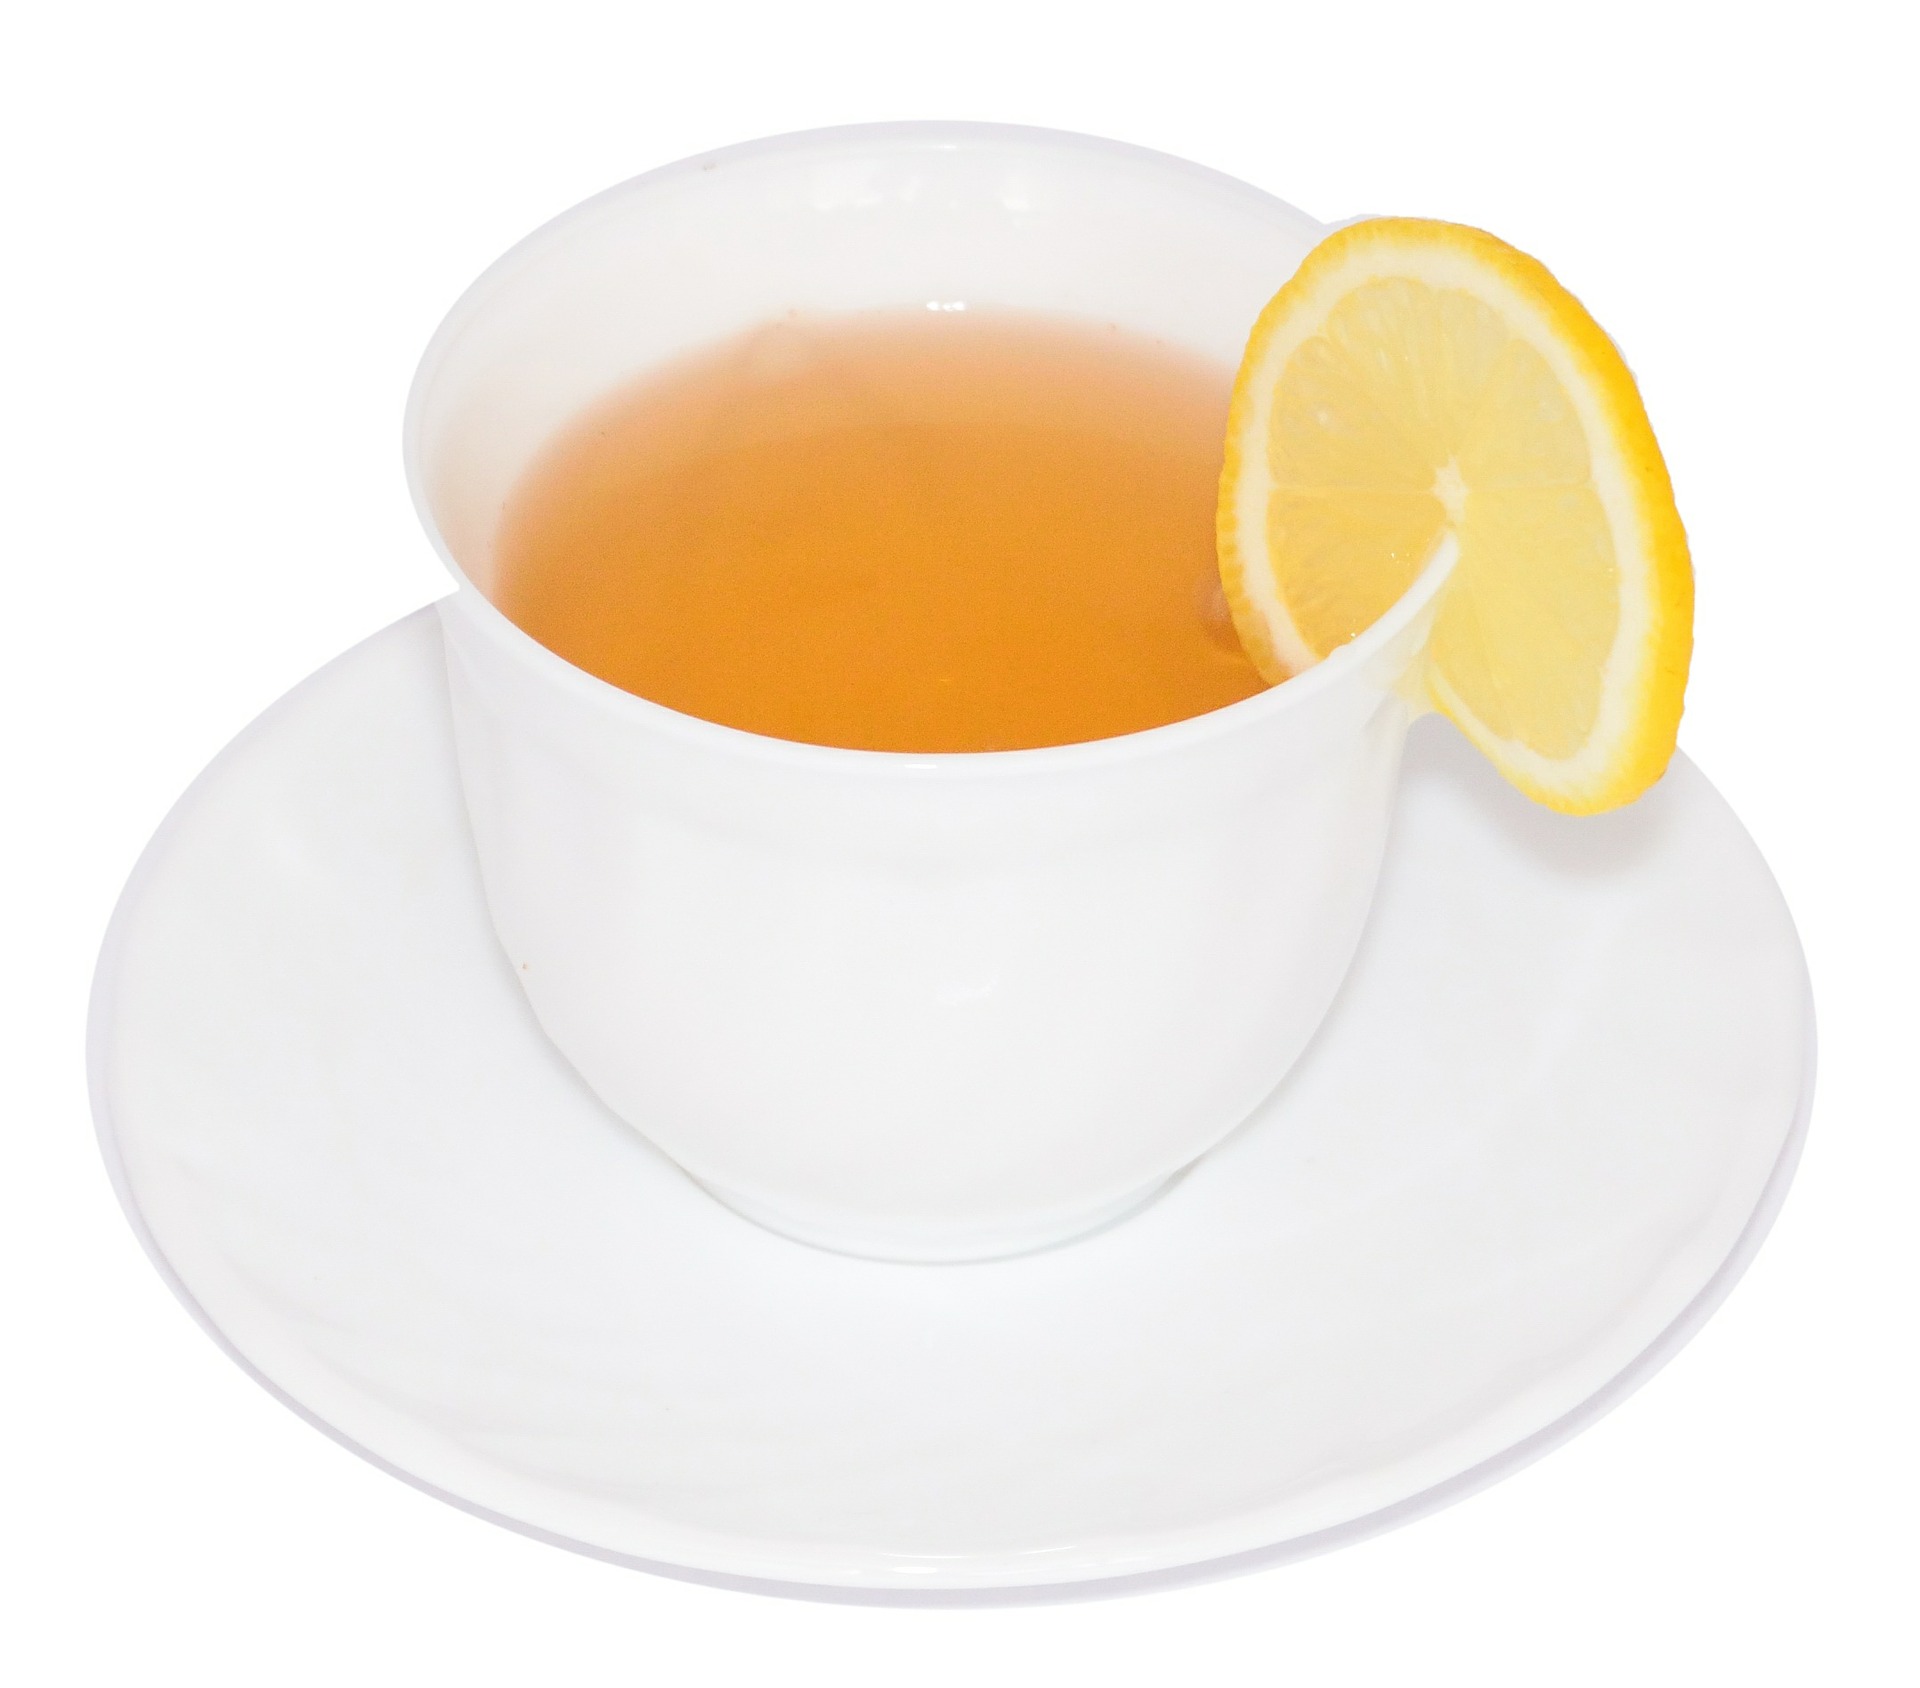 الشاي بالليمون.. الحل المثالي لتخسيس الوزن